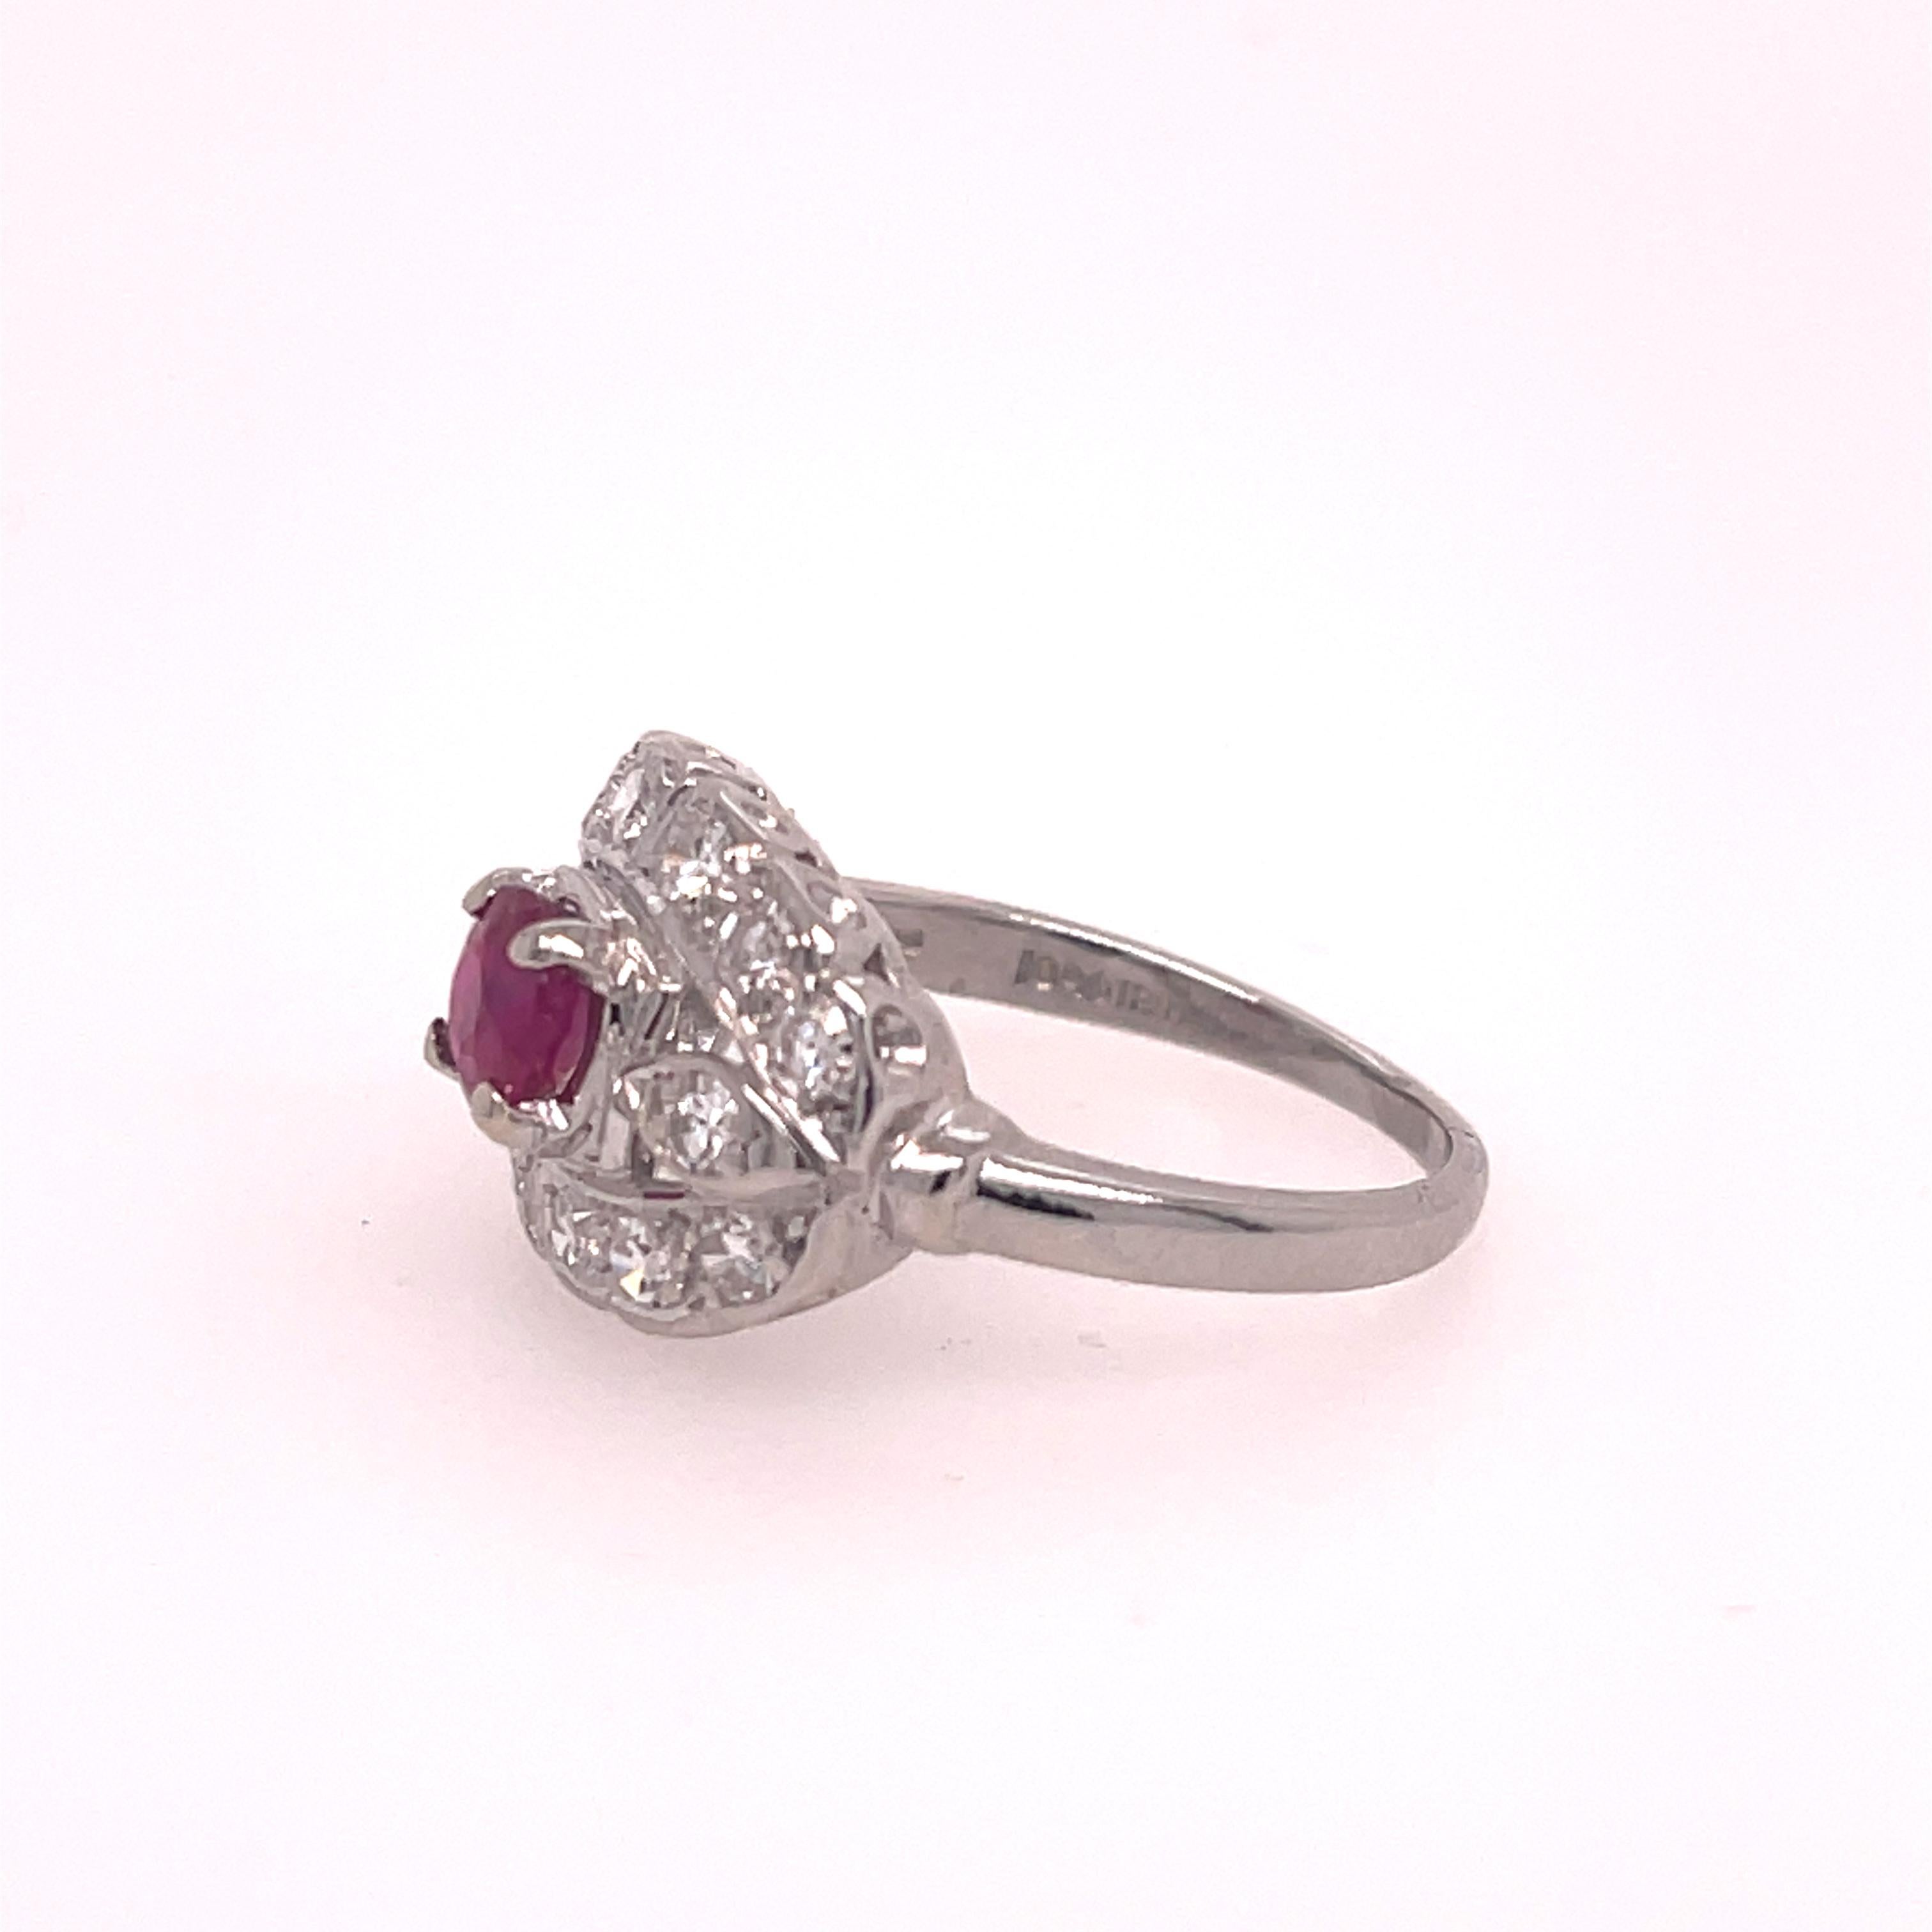 Damen Diamant und Rubin Art Deco Ring in Platin.  Der Ring enthält einen 0,61 natürlichen runden Rubin im Vollschliff, Qualität AA.  Der Mittelstein wird ergänzt durch 14 runde Diamanten im Einzelschliff mit einem Gesamtgewicht von etwa 1/4 Karat,